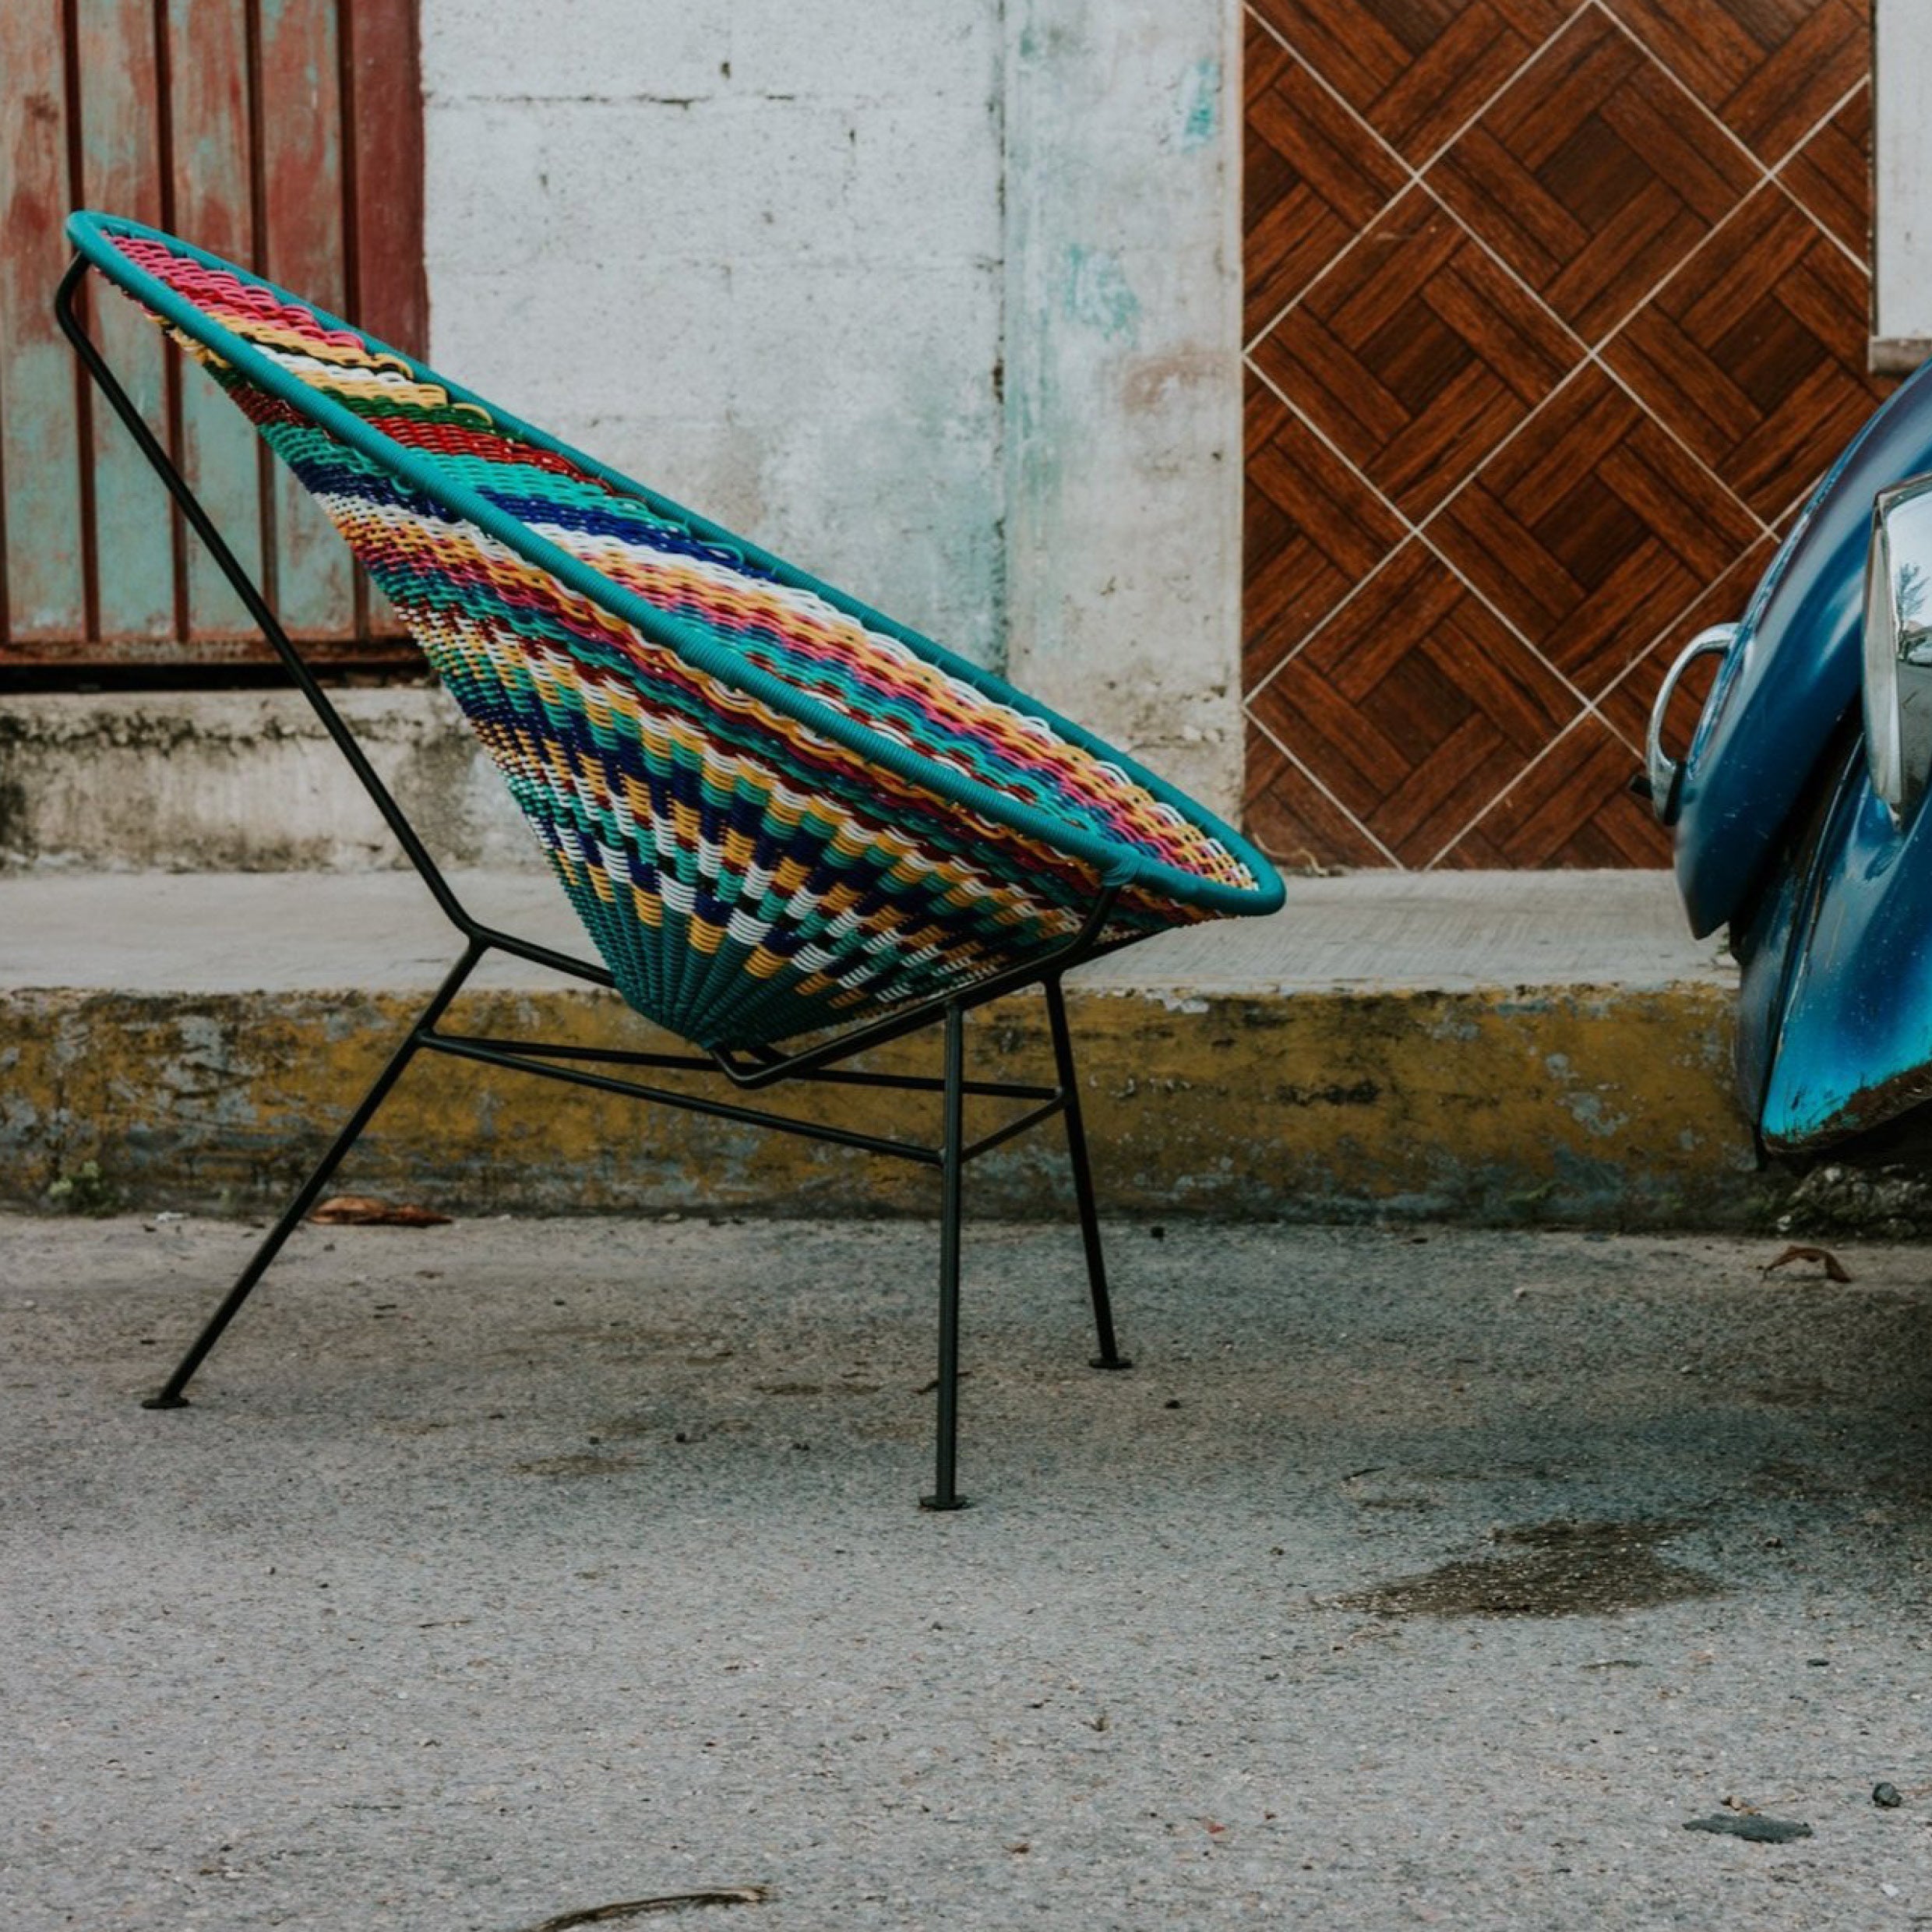 The Oaxaca Chair